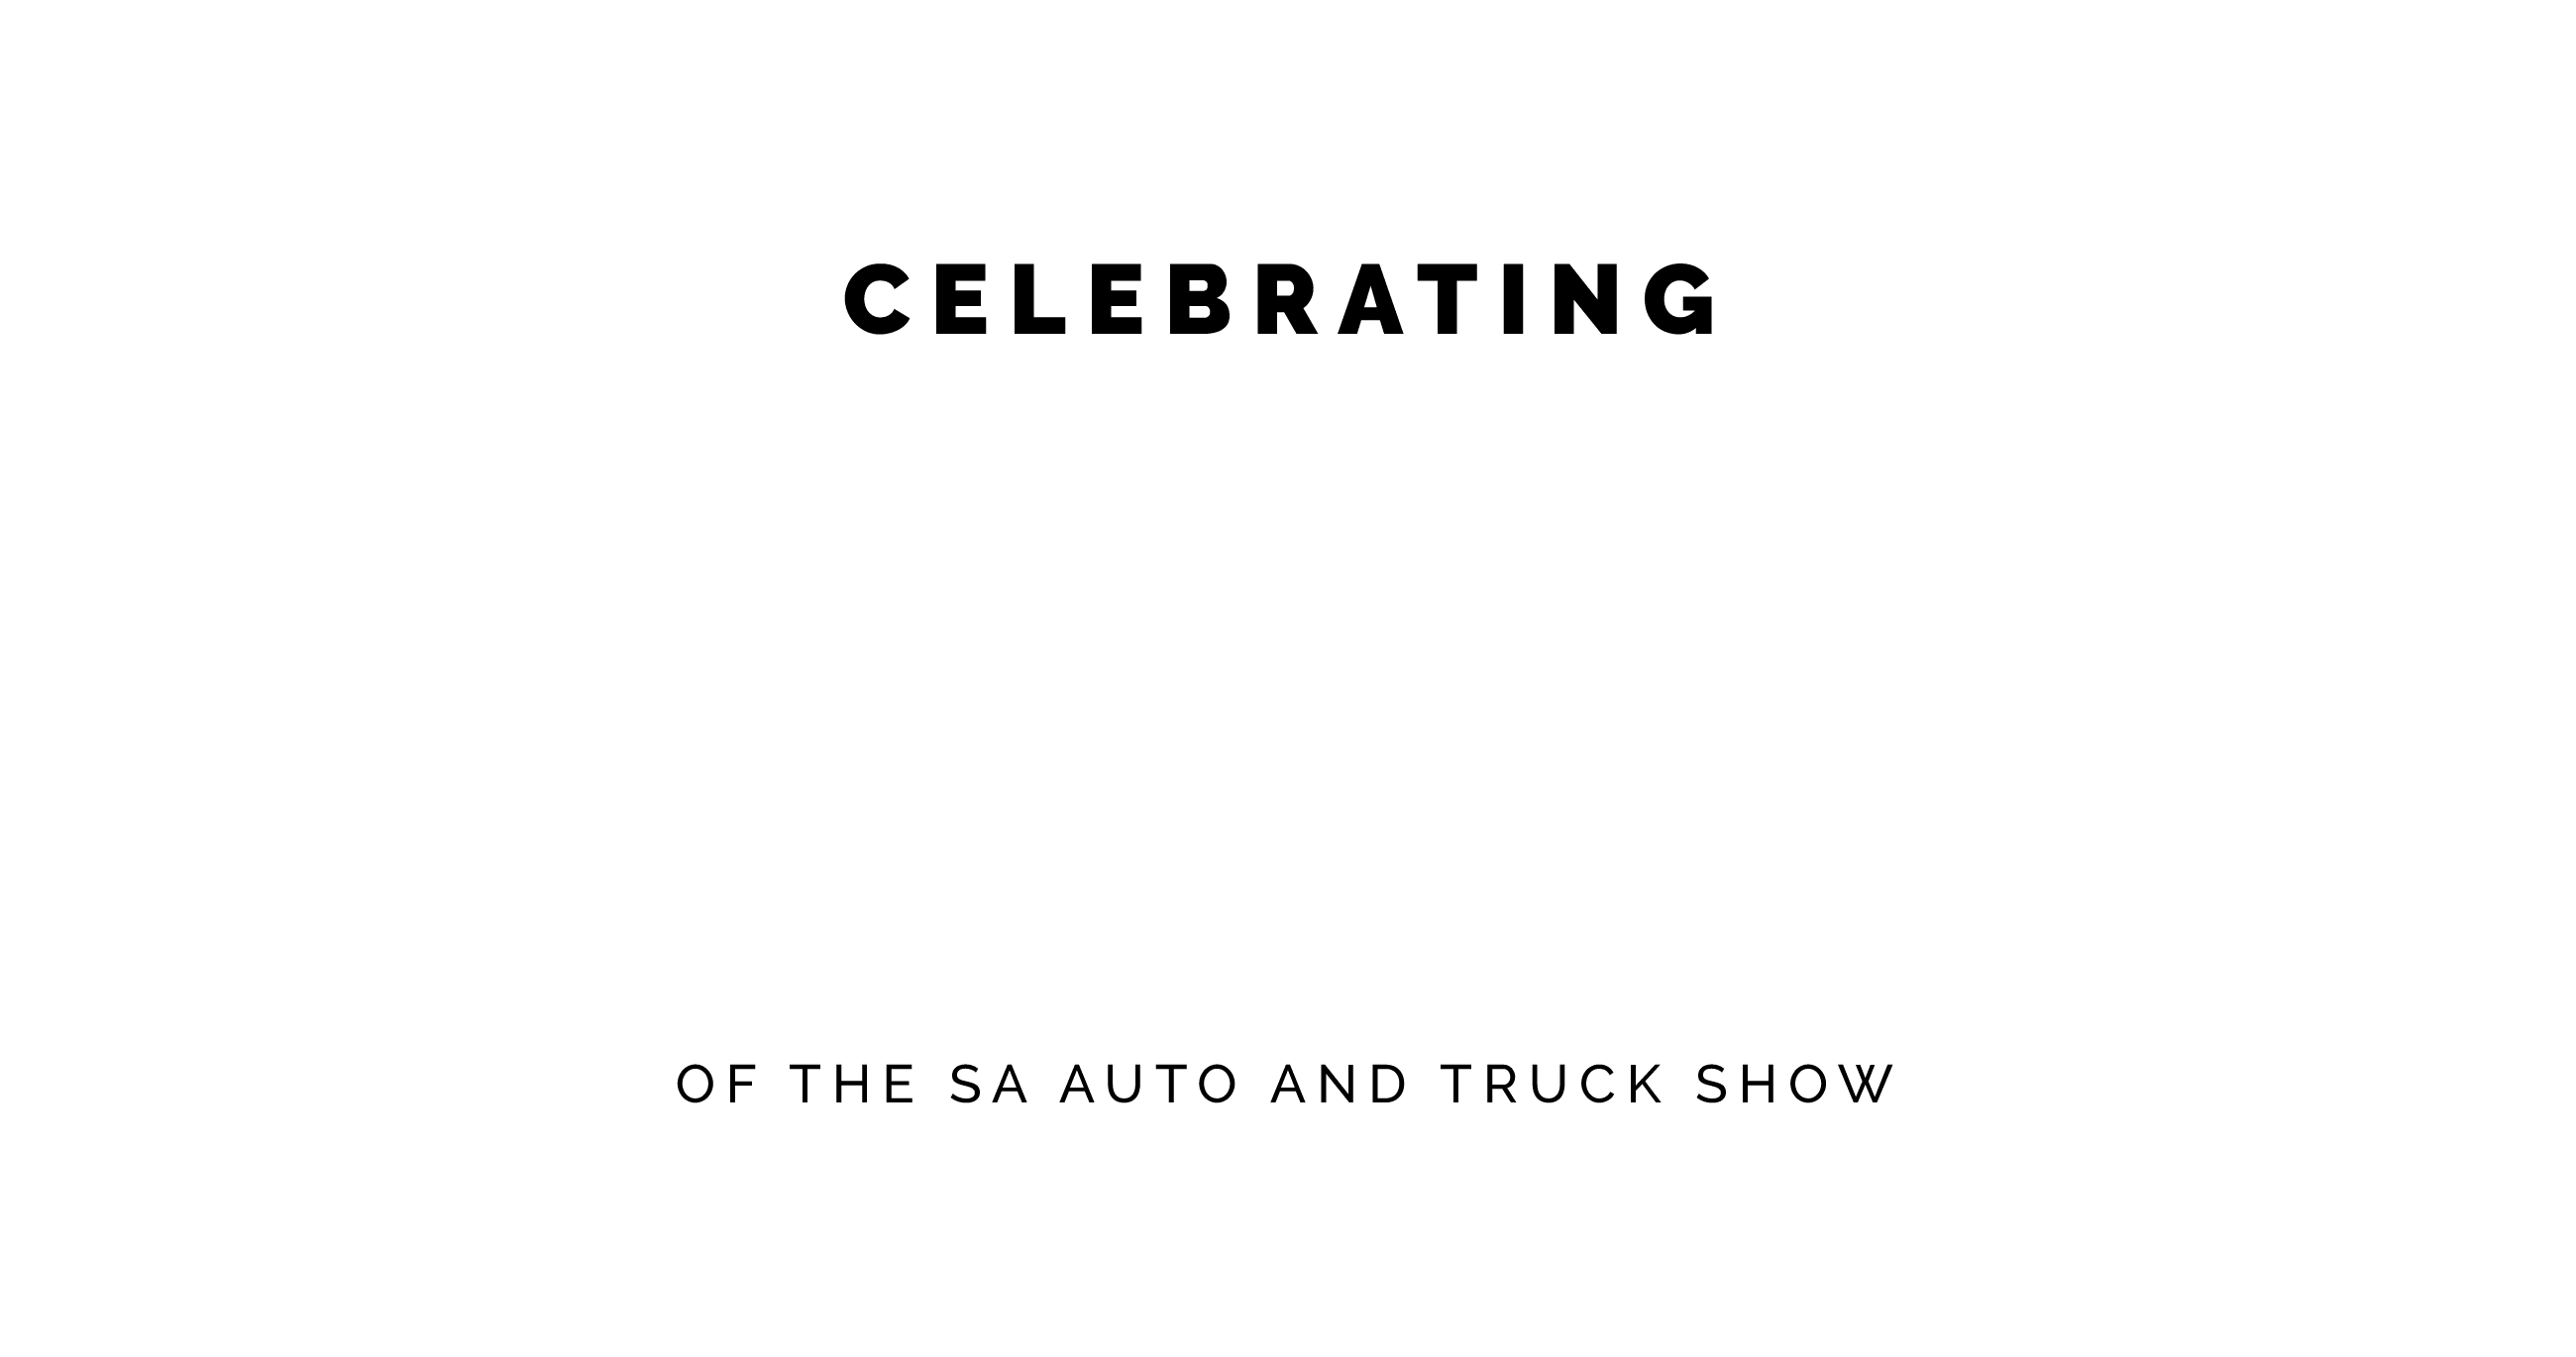 sa autoshow trucks 50 years